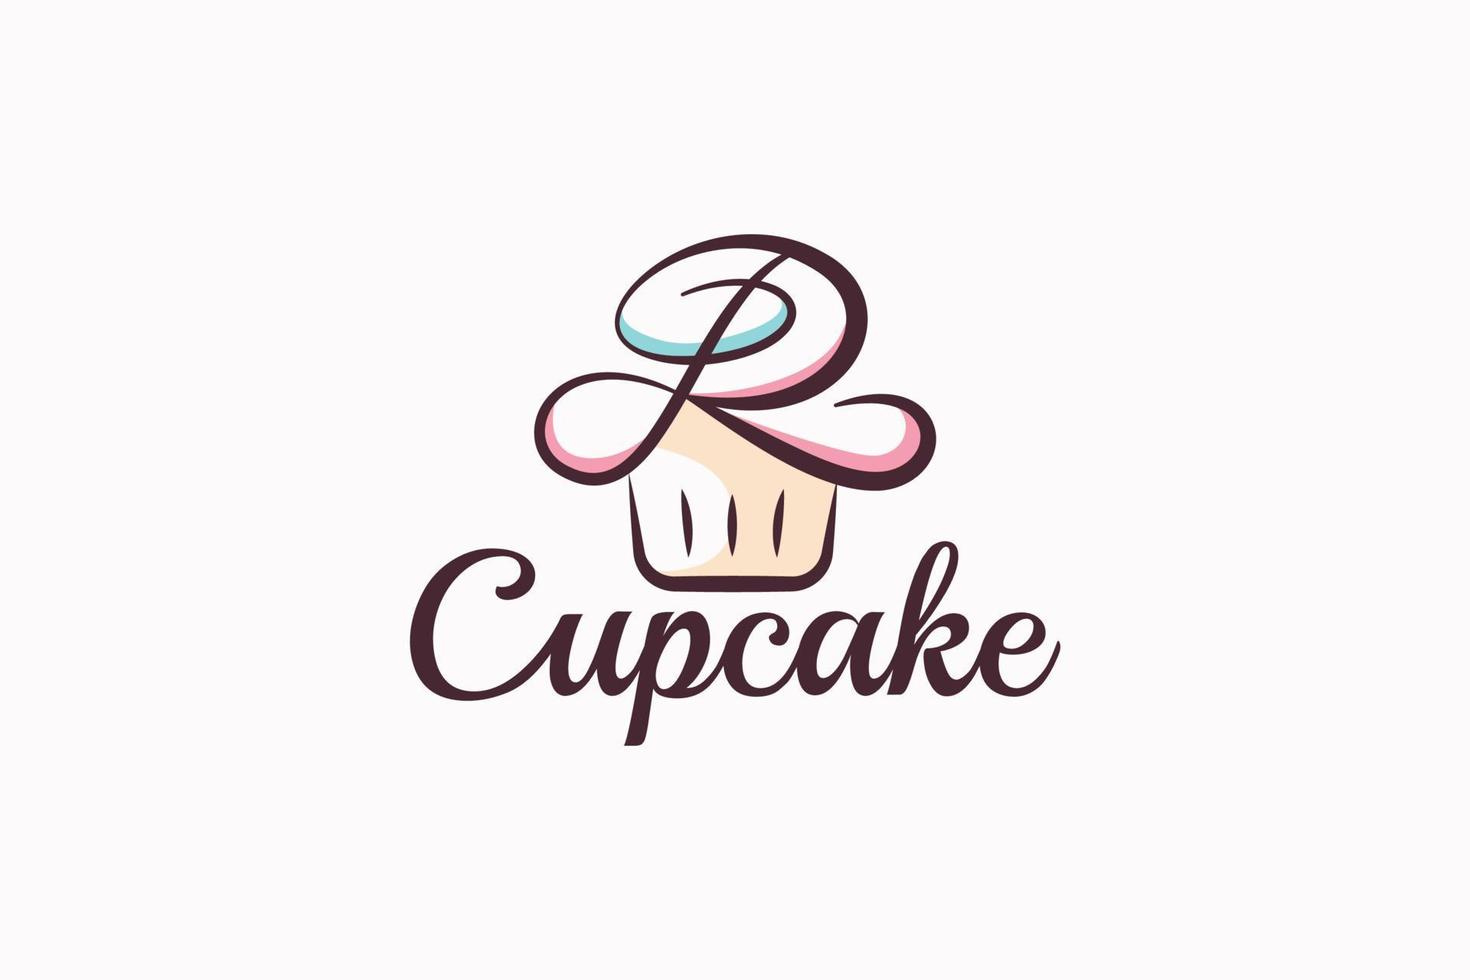 petit gâteau logo avec une combinaison de styliste petit gâteau et lettre r pour tout entreprise, surtout pour boulangeries, pâtisseries, café, etc. vecteur